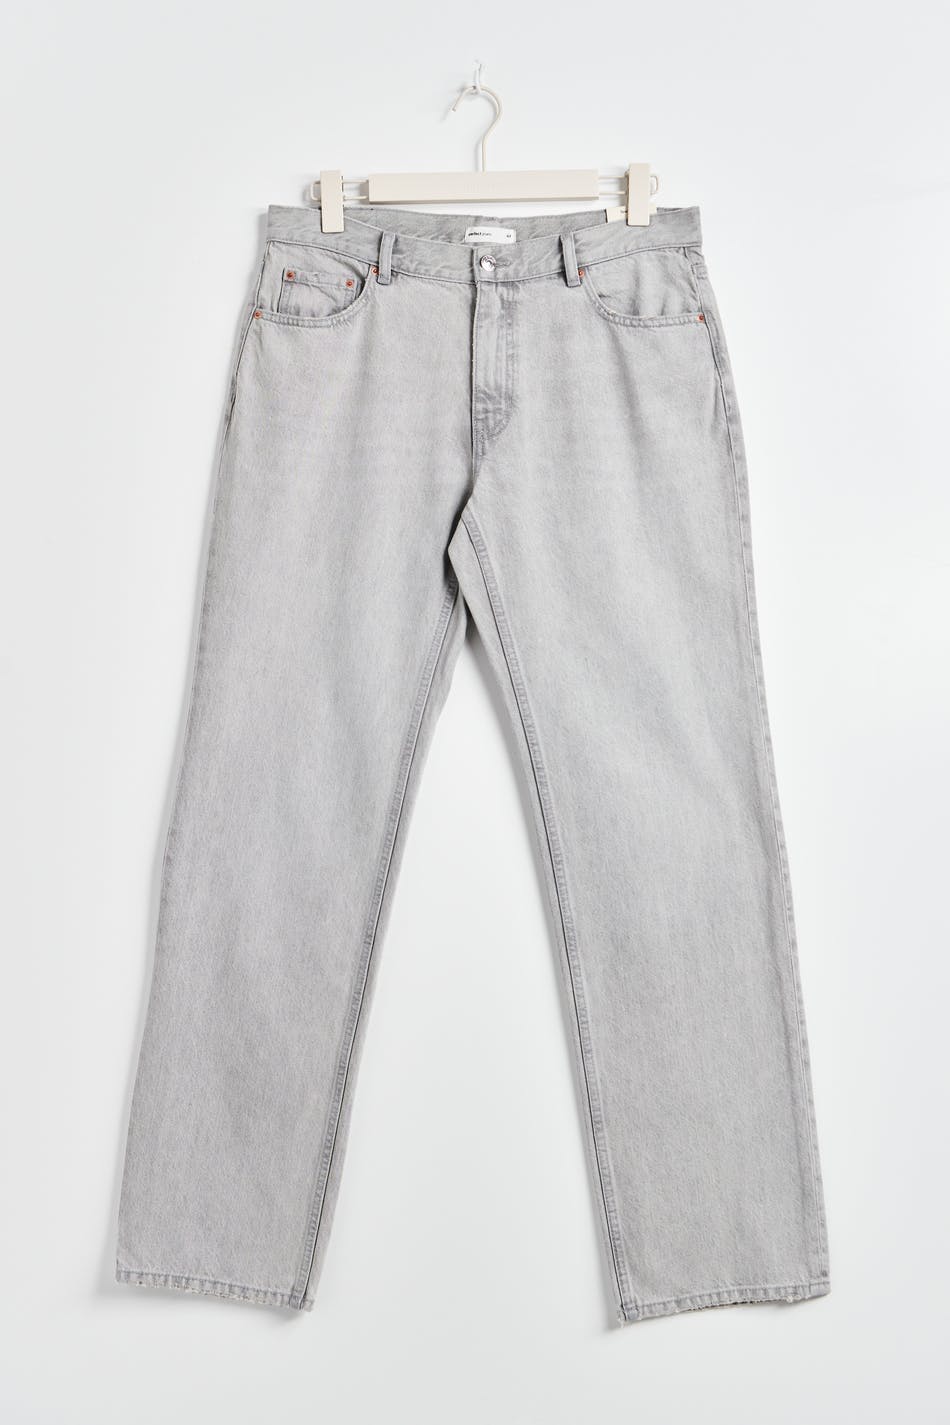 Vintage Levis 501 Jeans Coloured Regular Fit Denim Grey/Grey Blue/Light  Grey